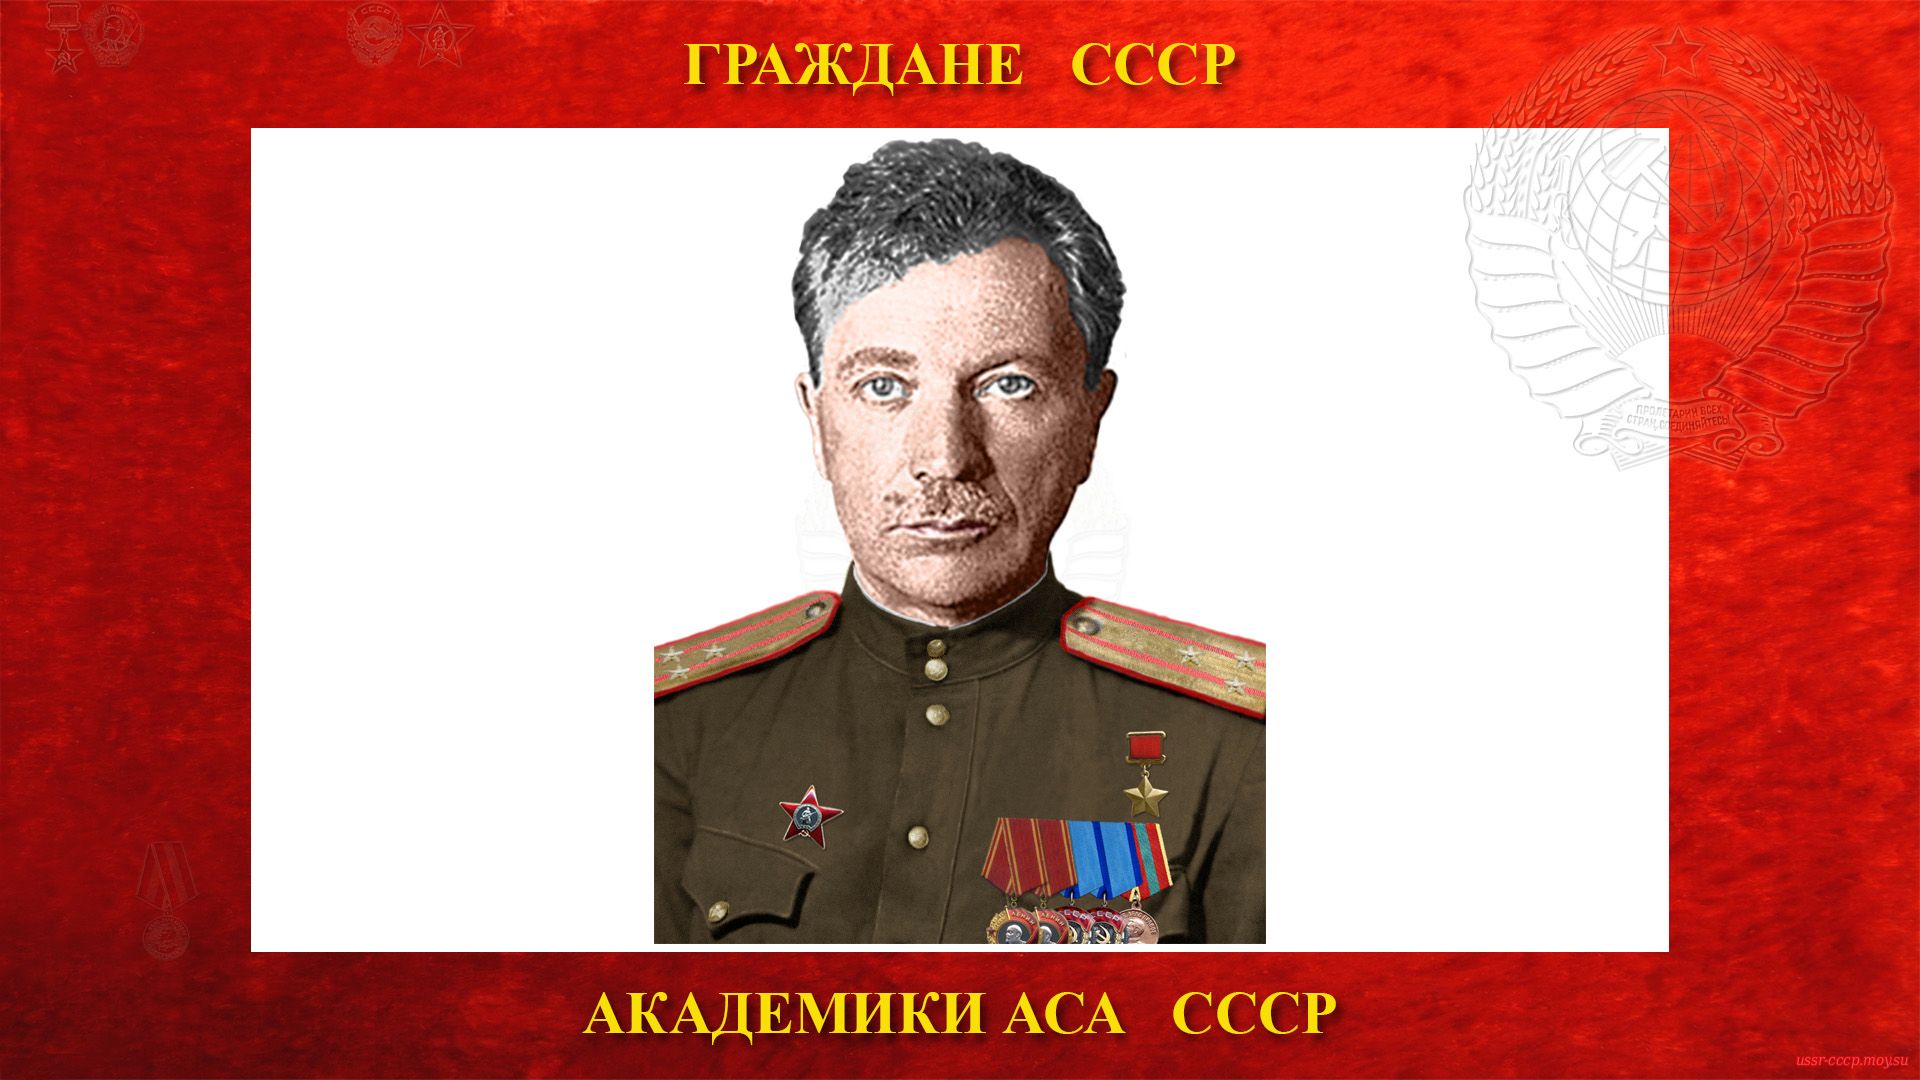 Сапрыкин Василий Андреевич — Советский академик АСА СССР